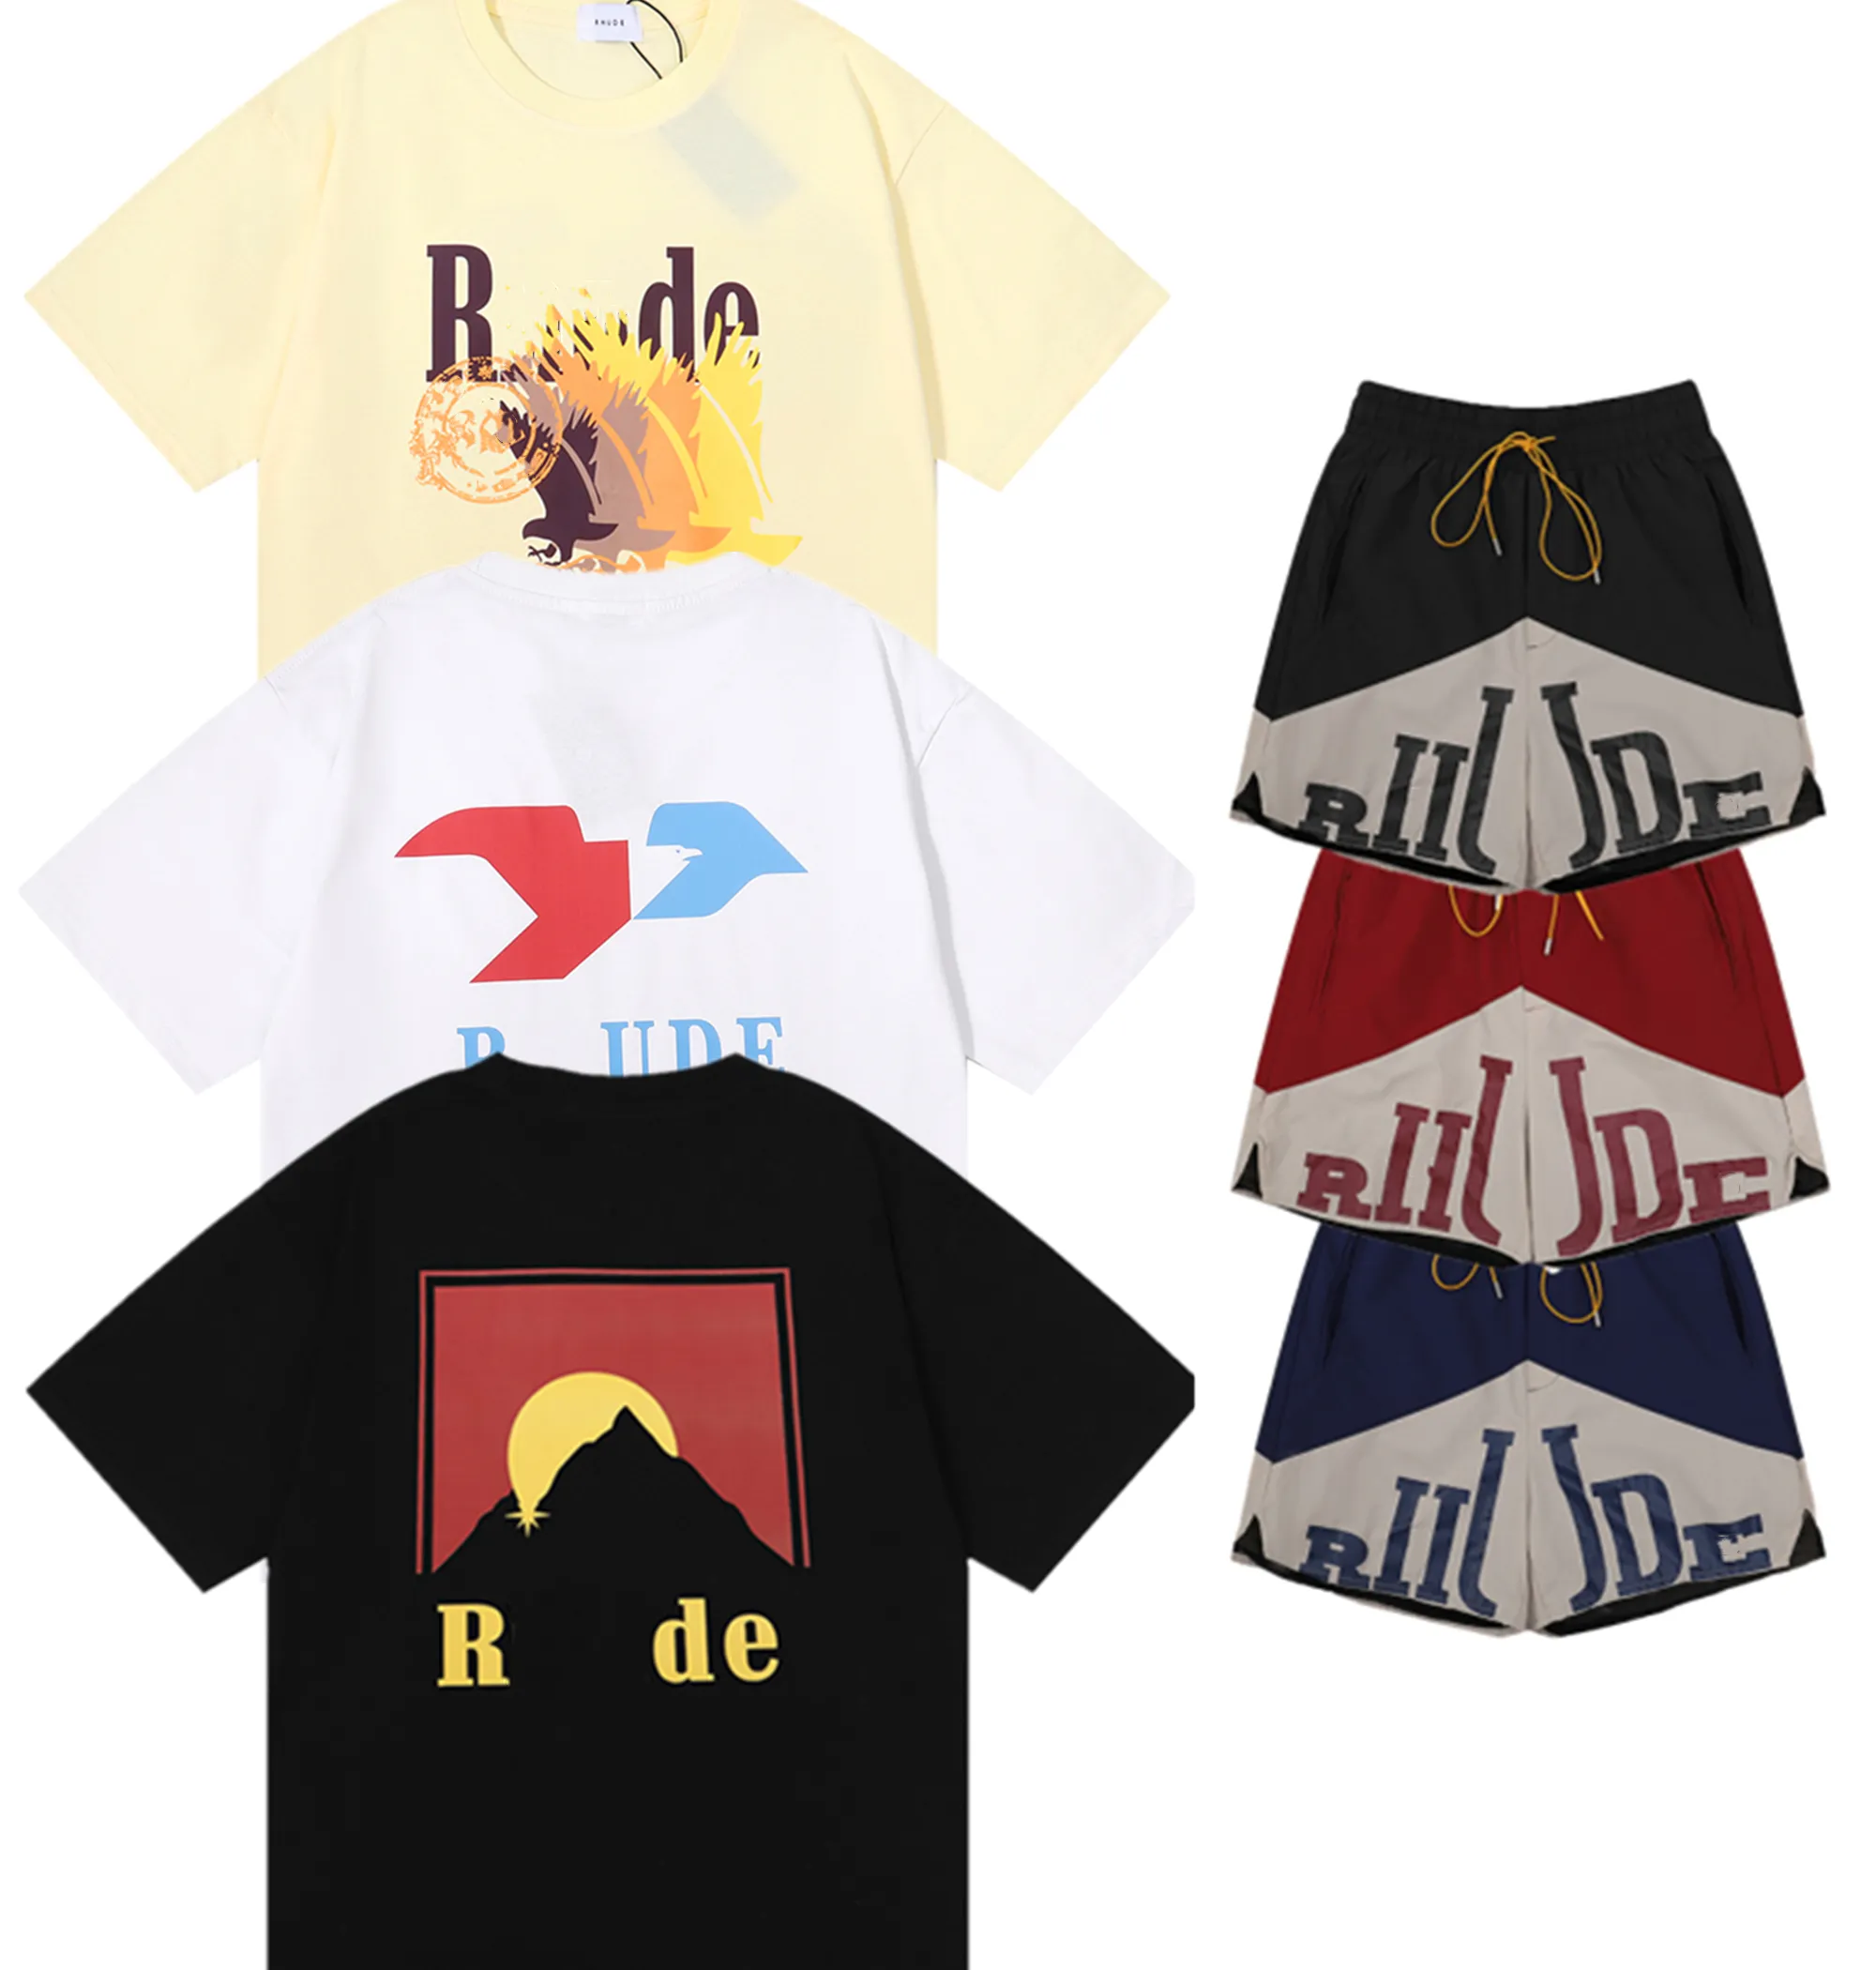 мужская футболка дизайнерские футболки женская одежда графические футболки выкройка футболка одежда хай-стрит хлопок хип-хоп простые буквы ретро принт свободные гонки